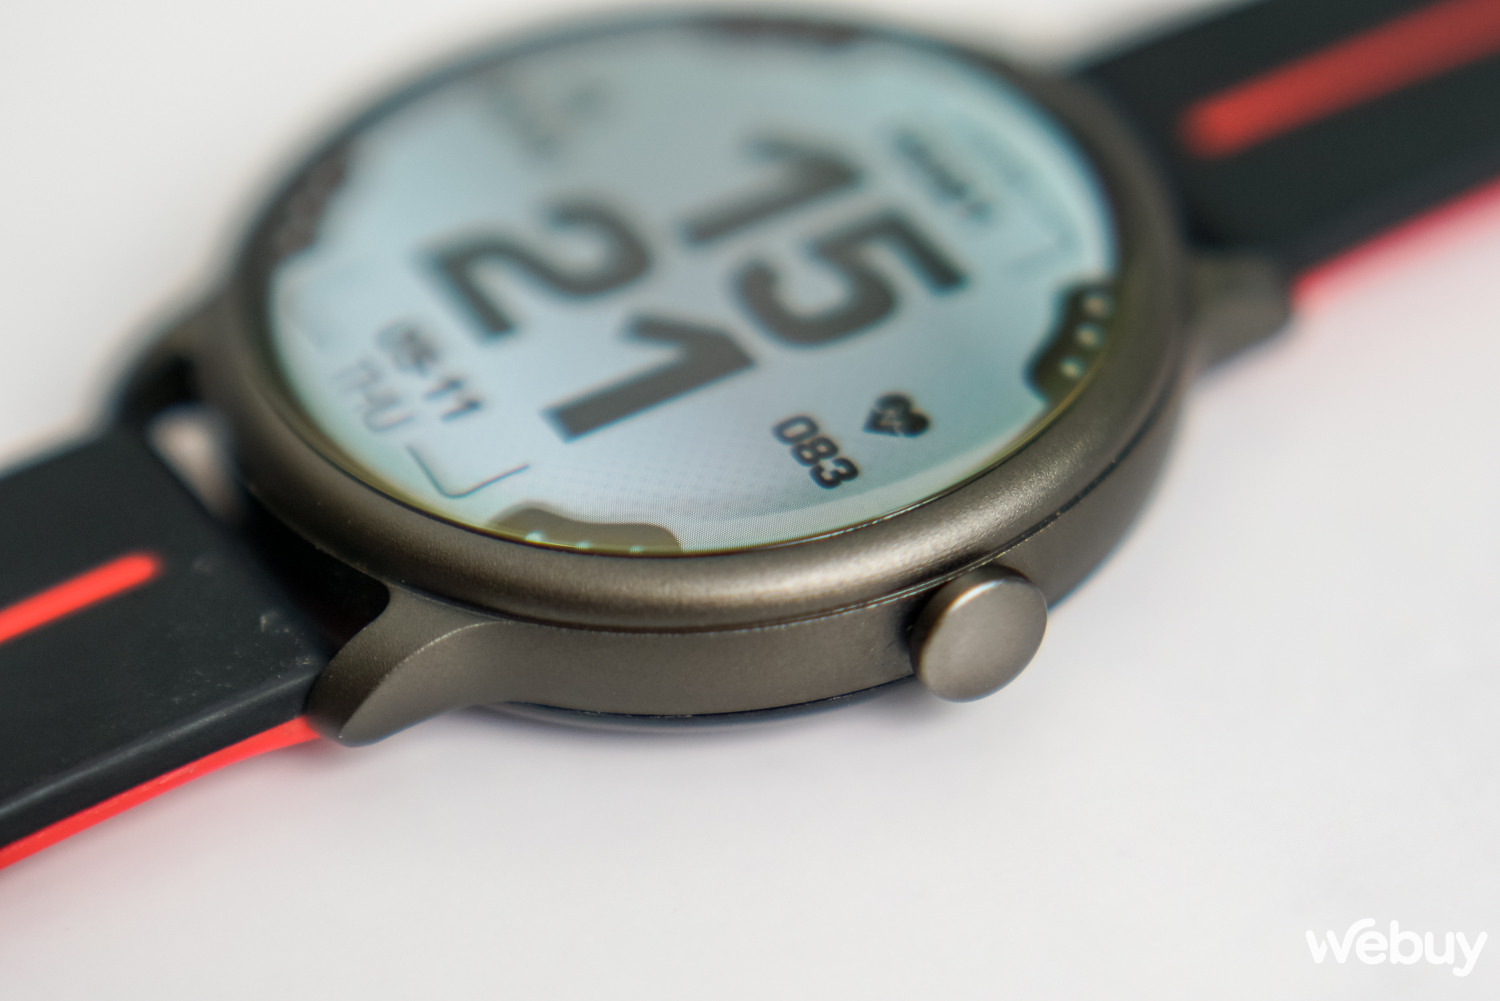 Smartwatch đẹp hơn Apple Watch nhưng giá chỉ bằng 1 phần 10 - Ảnh 4.